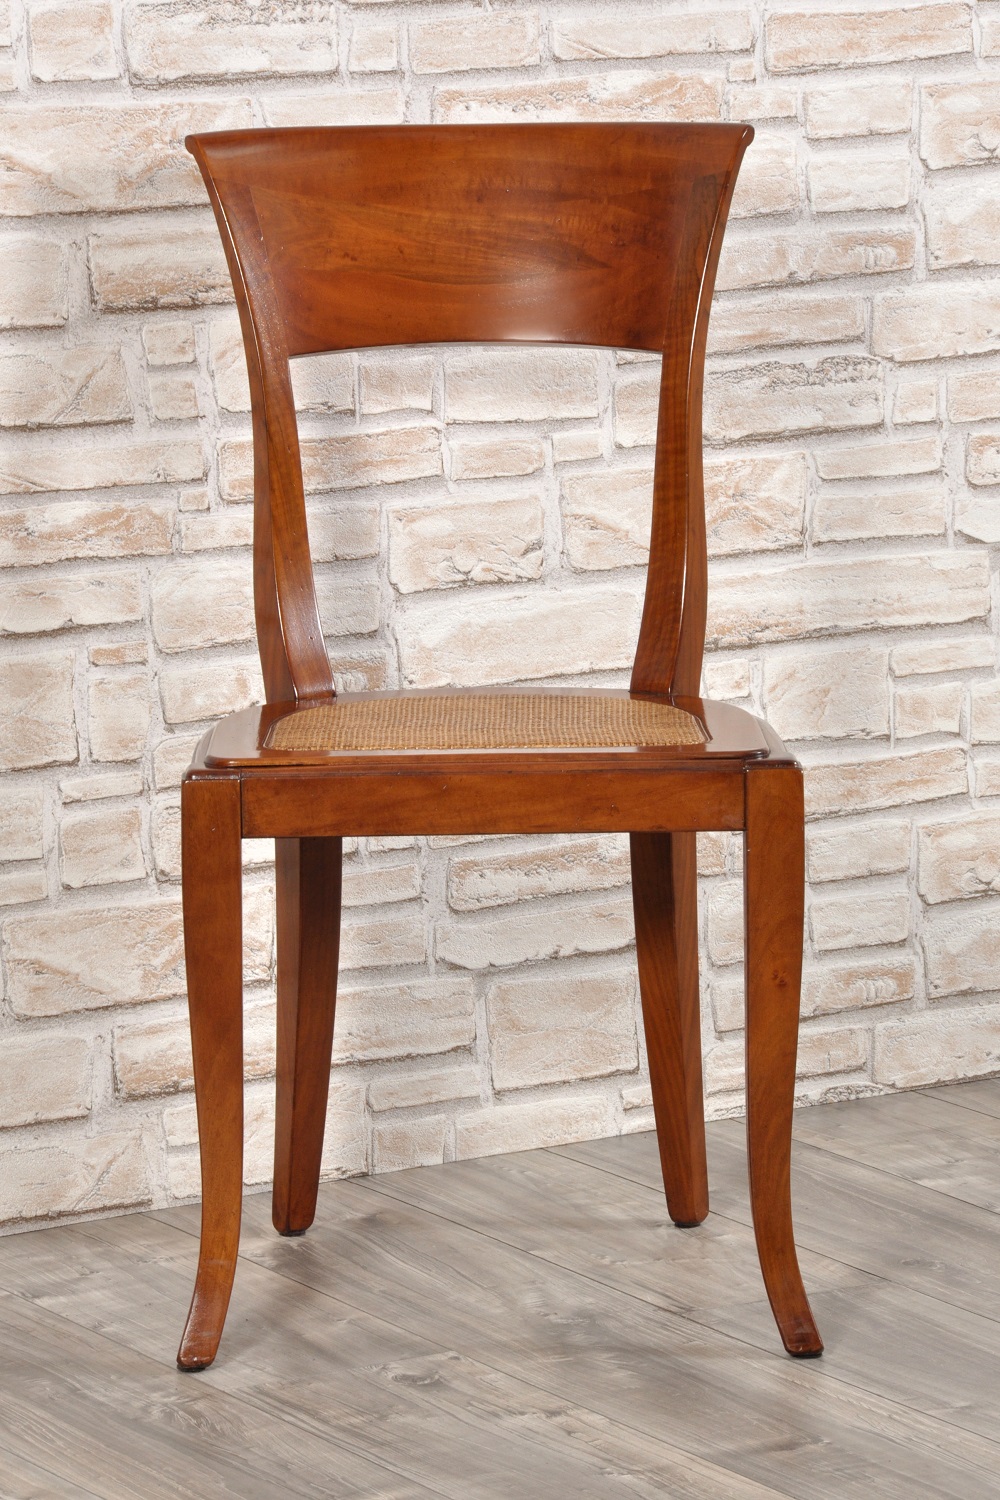 sedia con le gambe sagomate a sciabola e lo schienale arrotondato in legno pregiato di noce massello abbinabile con tavoli classici in stile veneto